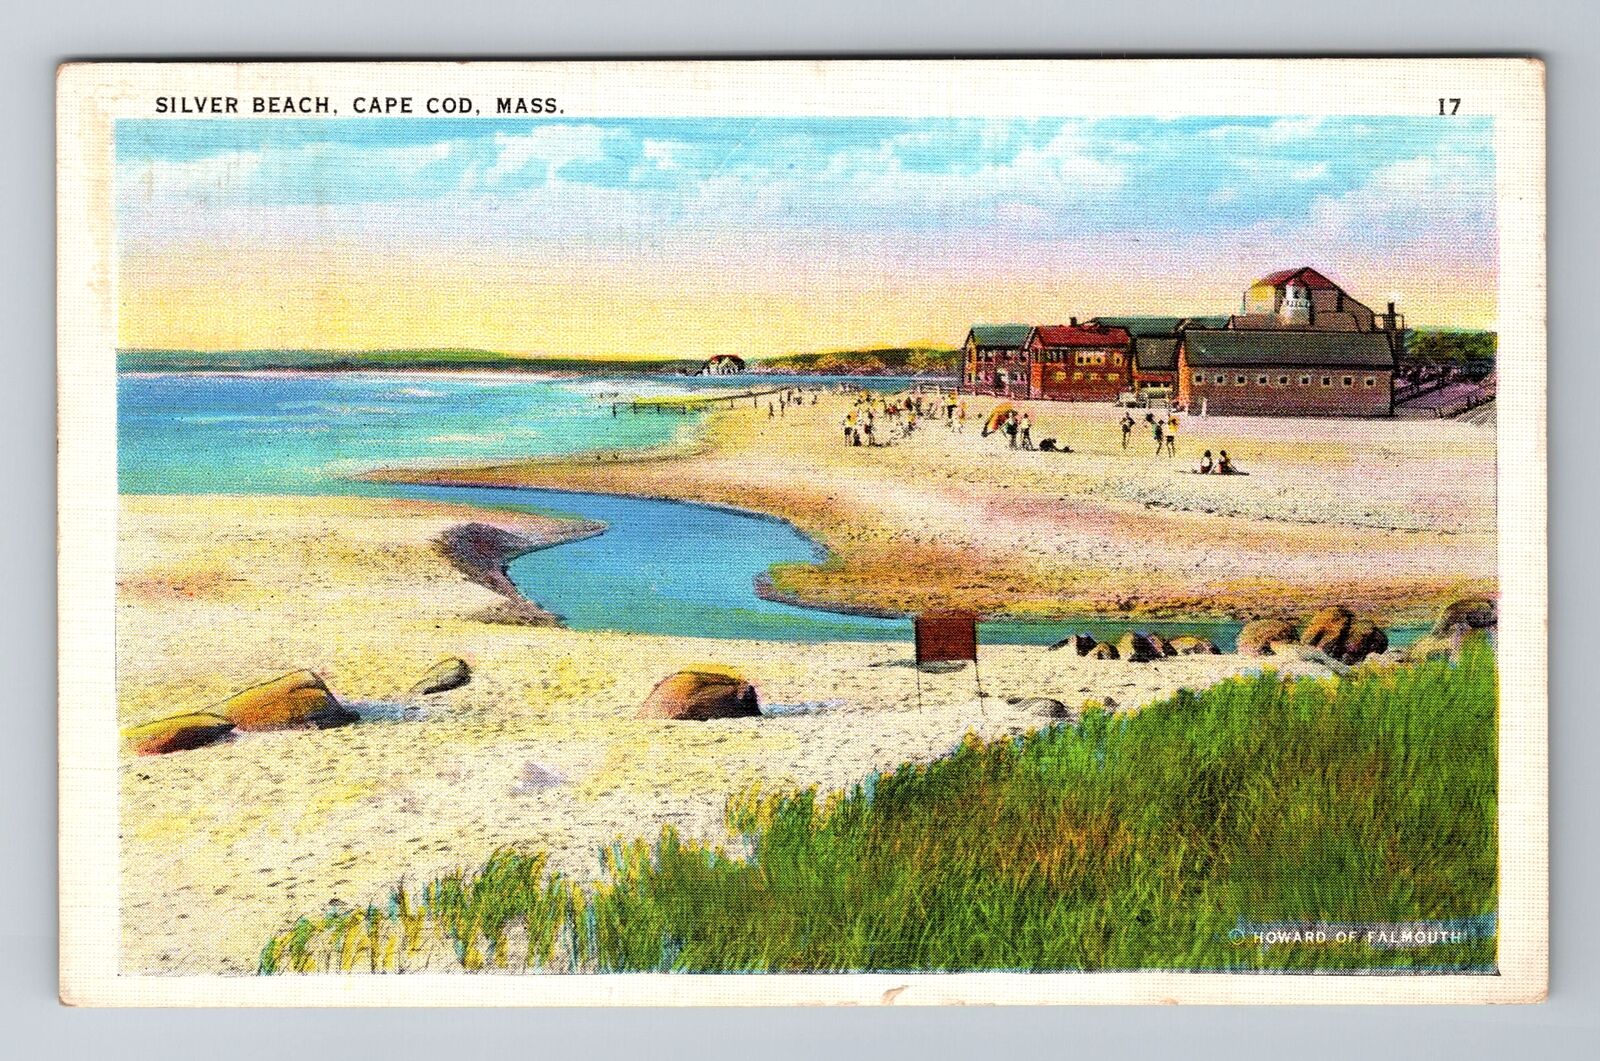 Cape Cod, MA-Massachusetts, Silver Beach Bathers c1943 Souvenir Vintage Postcard